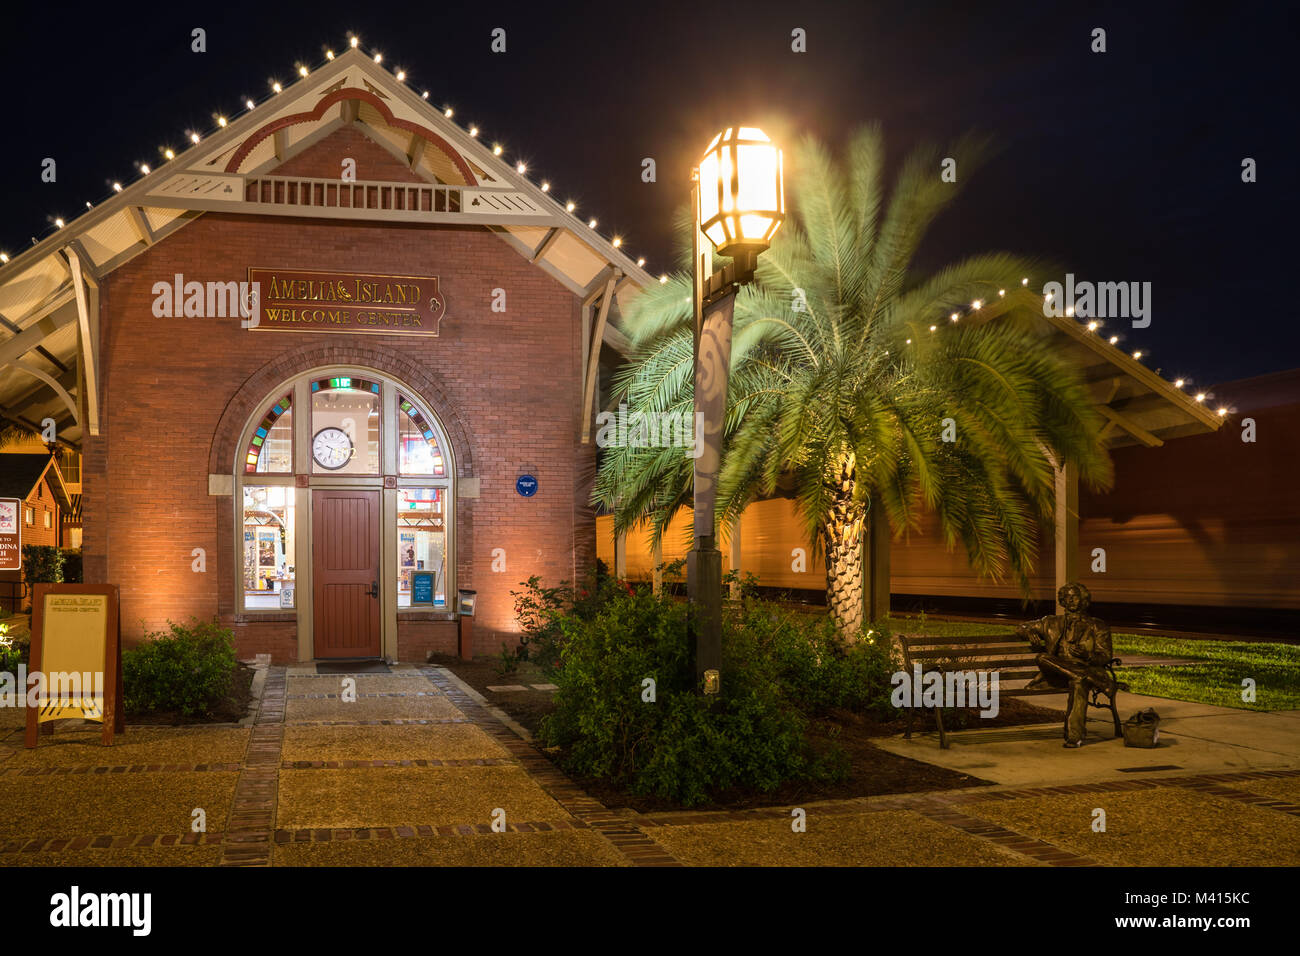 Le centre-ville historique de rue Centre Gare la nuit, Amelia Island, Floride Banque D'Images